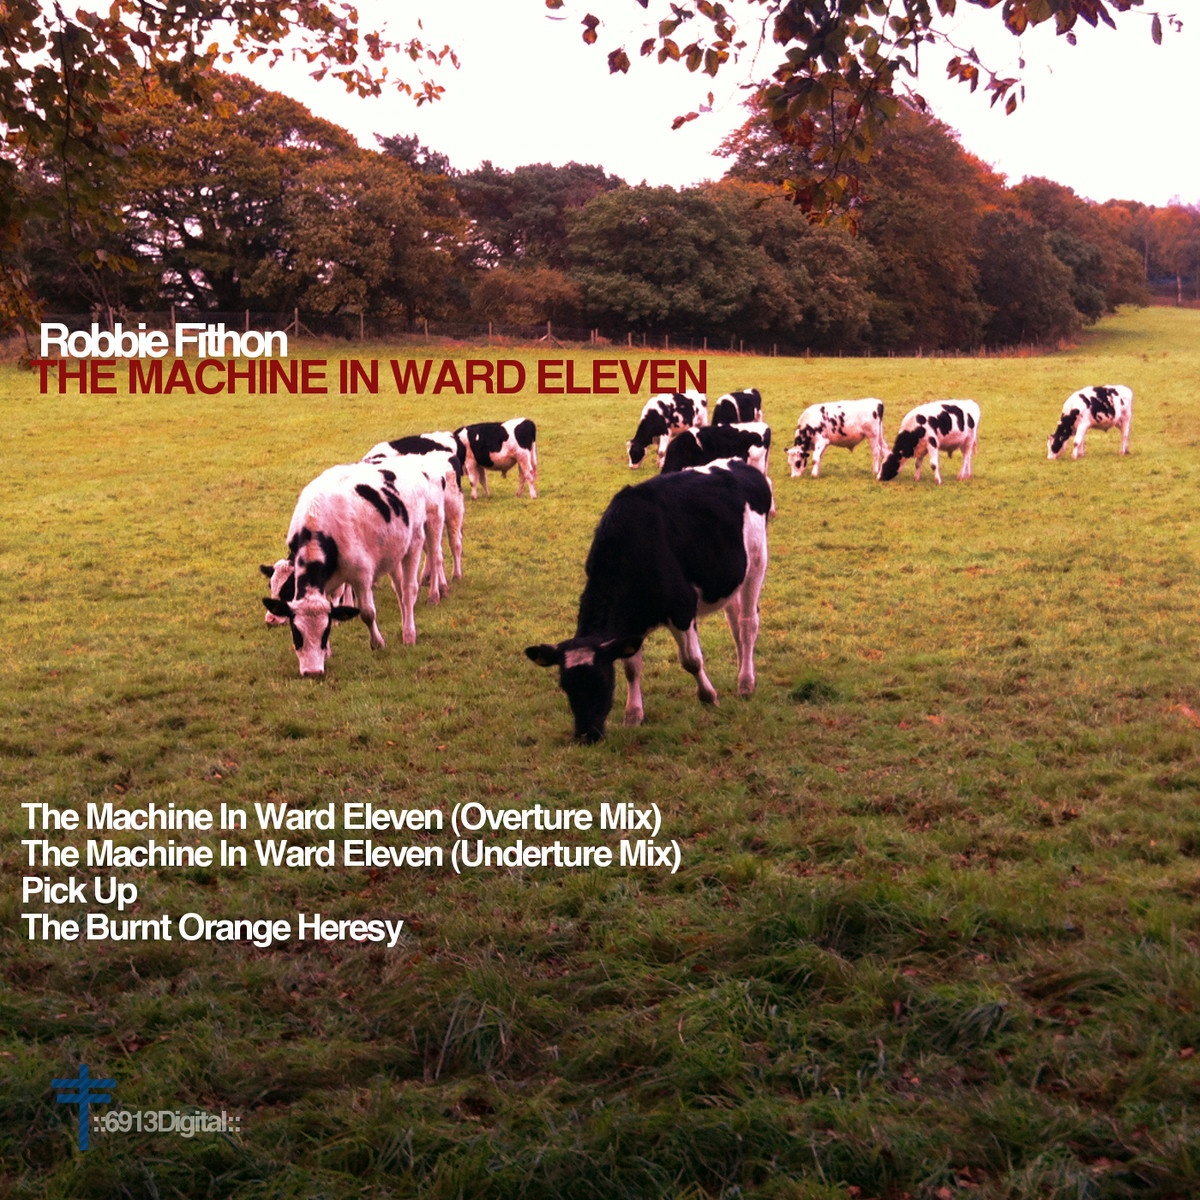 The Machine In Ward Eleven (Underture Mix)